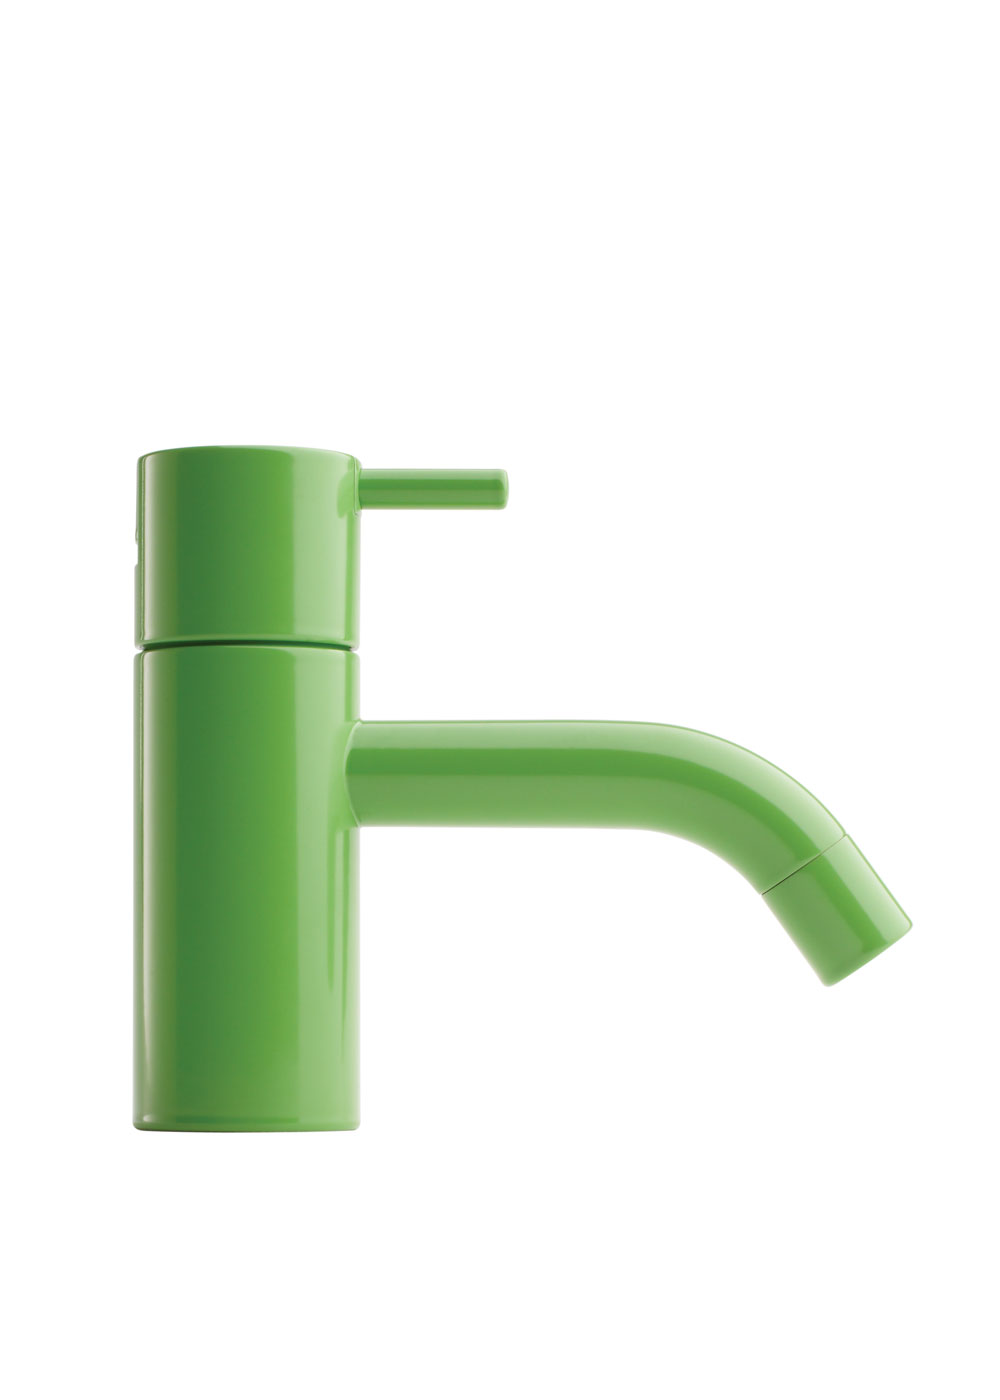 VOLA blandare designad 1968 – en ikon som sparar vatten